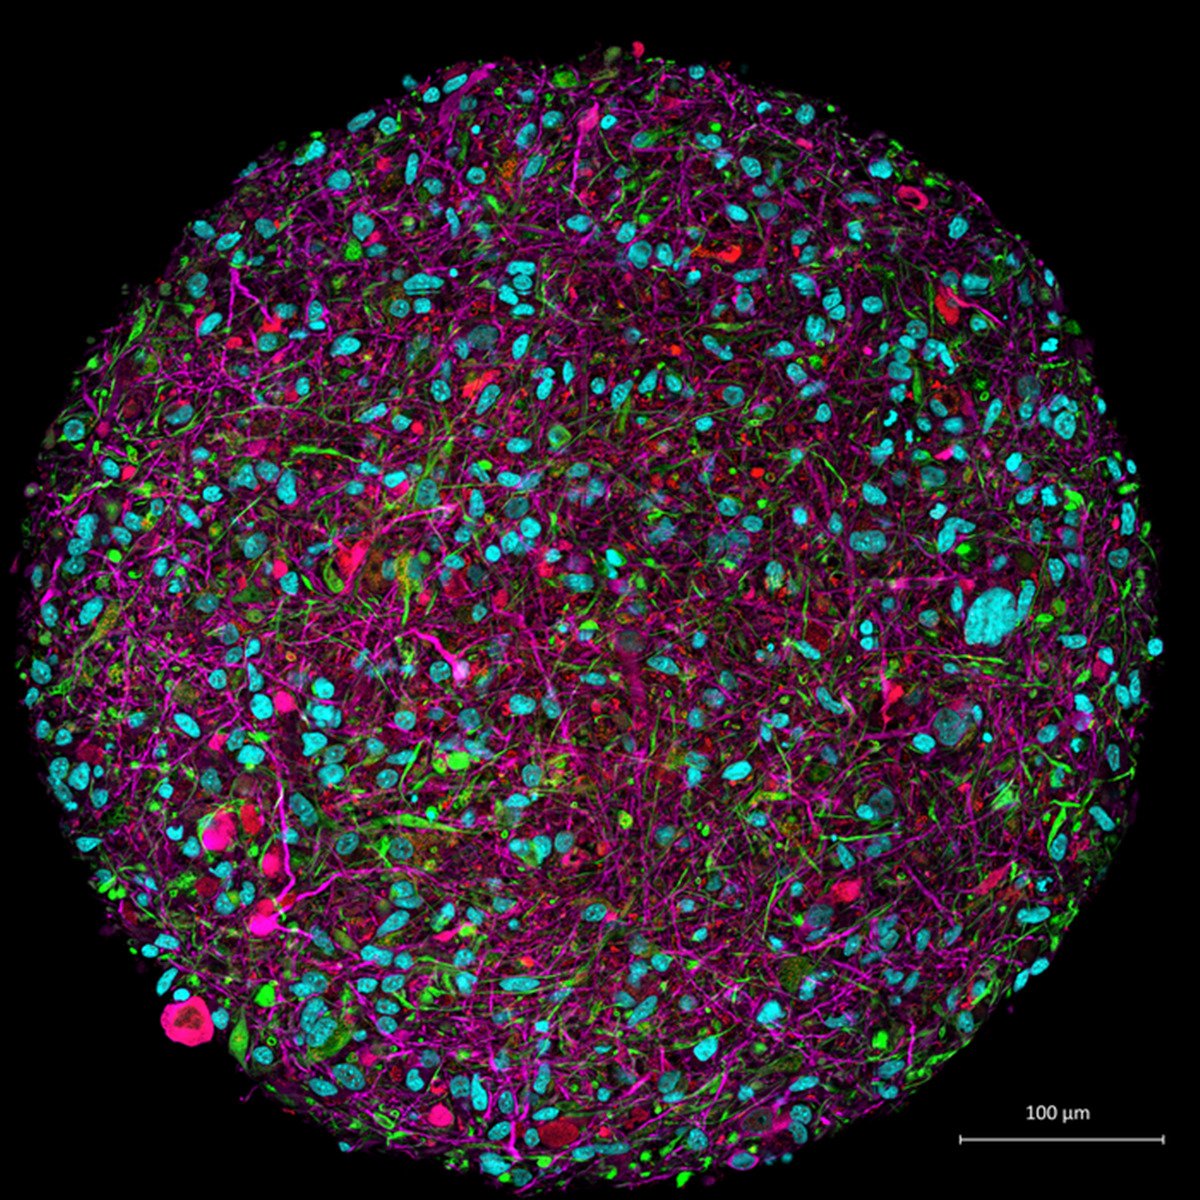 Imagem ampliada de um organoide cerebral cultivado em laboratório com um marcador florescente indicando os diferentes tipos de células; em rosa, os neurônios; os oligodendrócitos em vermelho; os astrócitos em verde; núcleos de células em azul